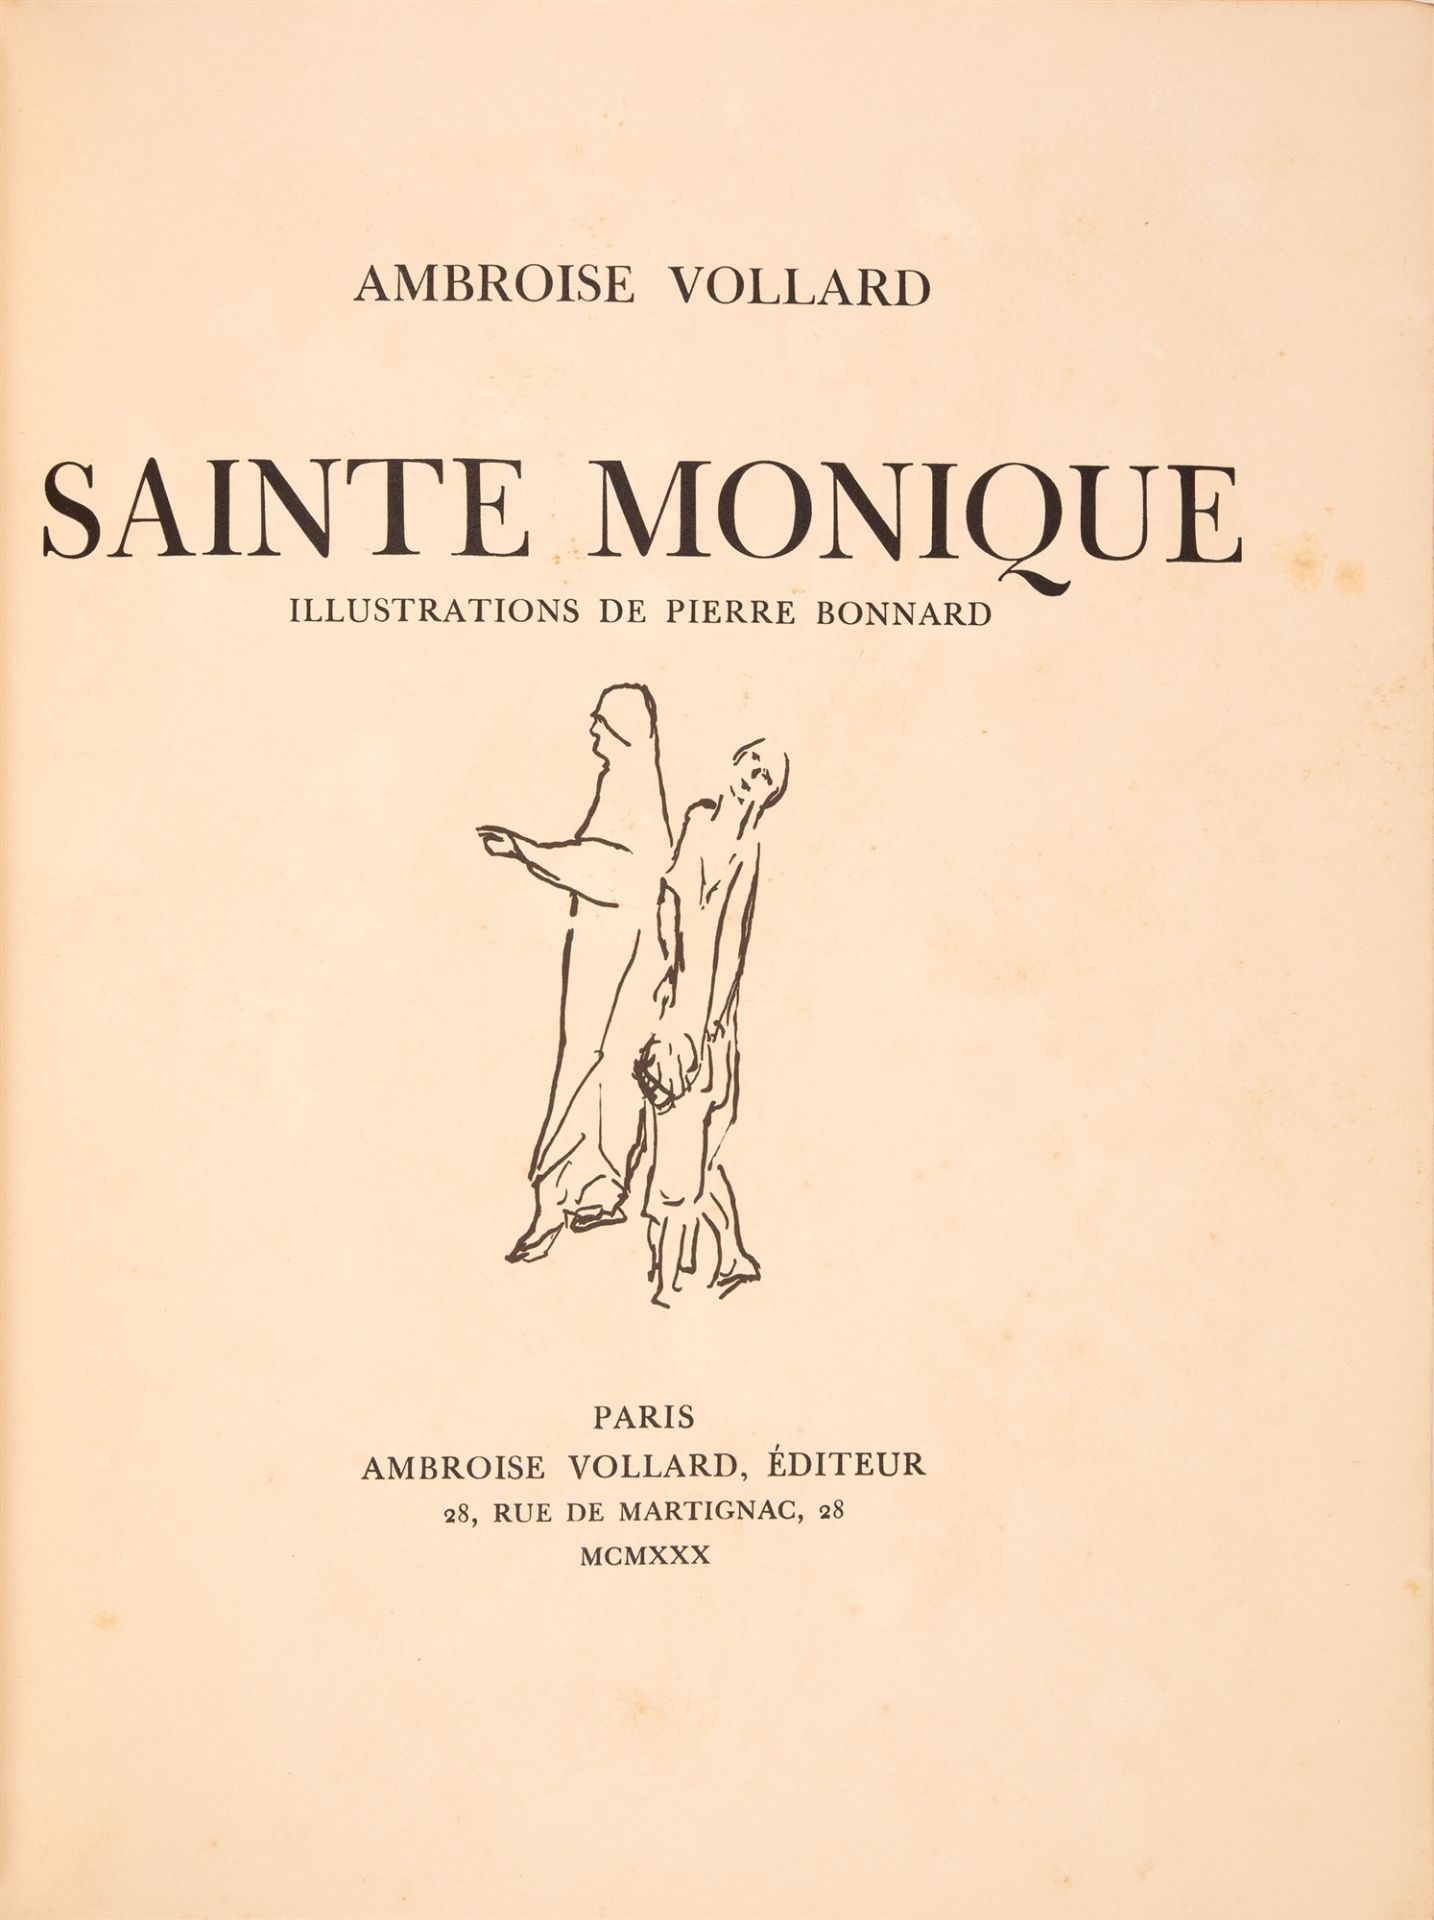 P. Bonnard / A. Vollard, Sainte Monique. Paris 1930.